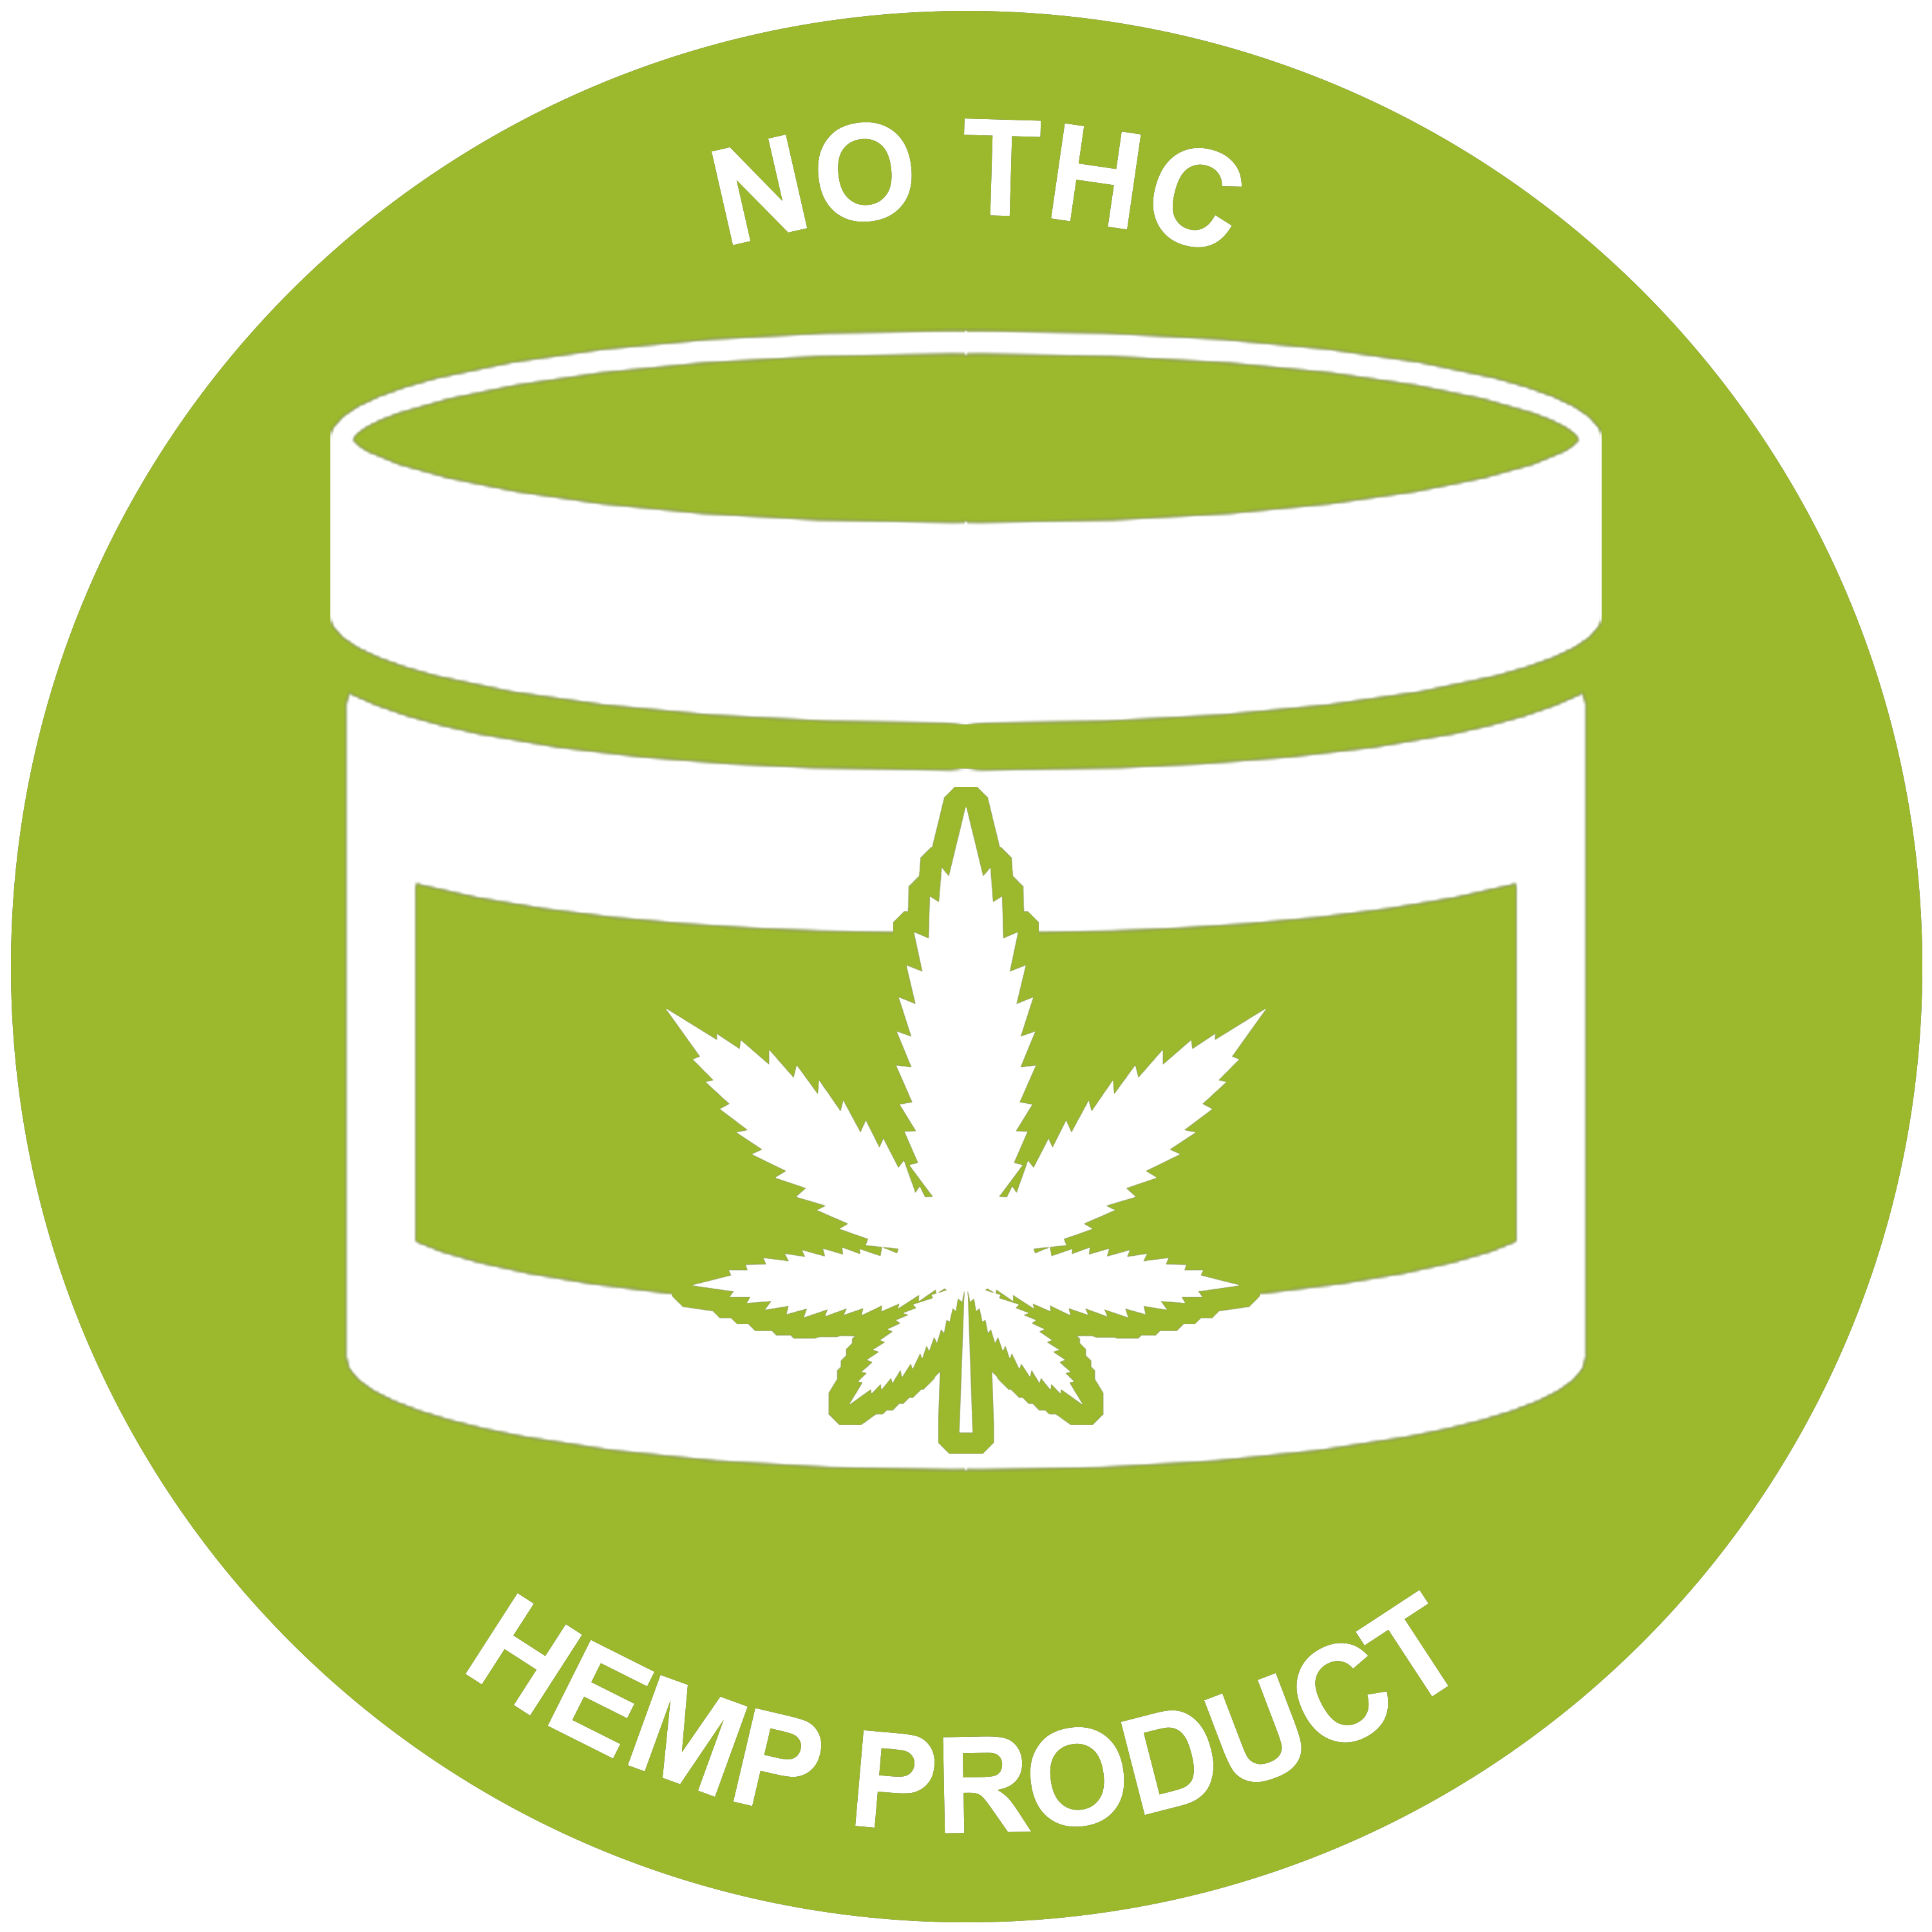 No THC Hemp Product